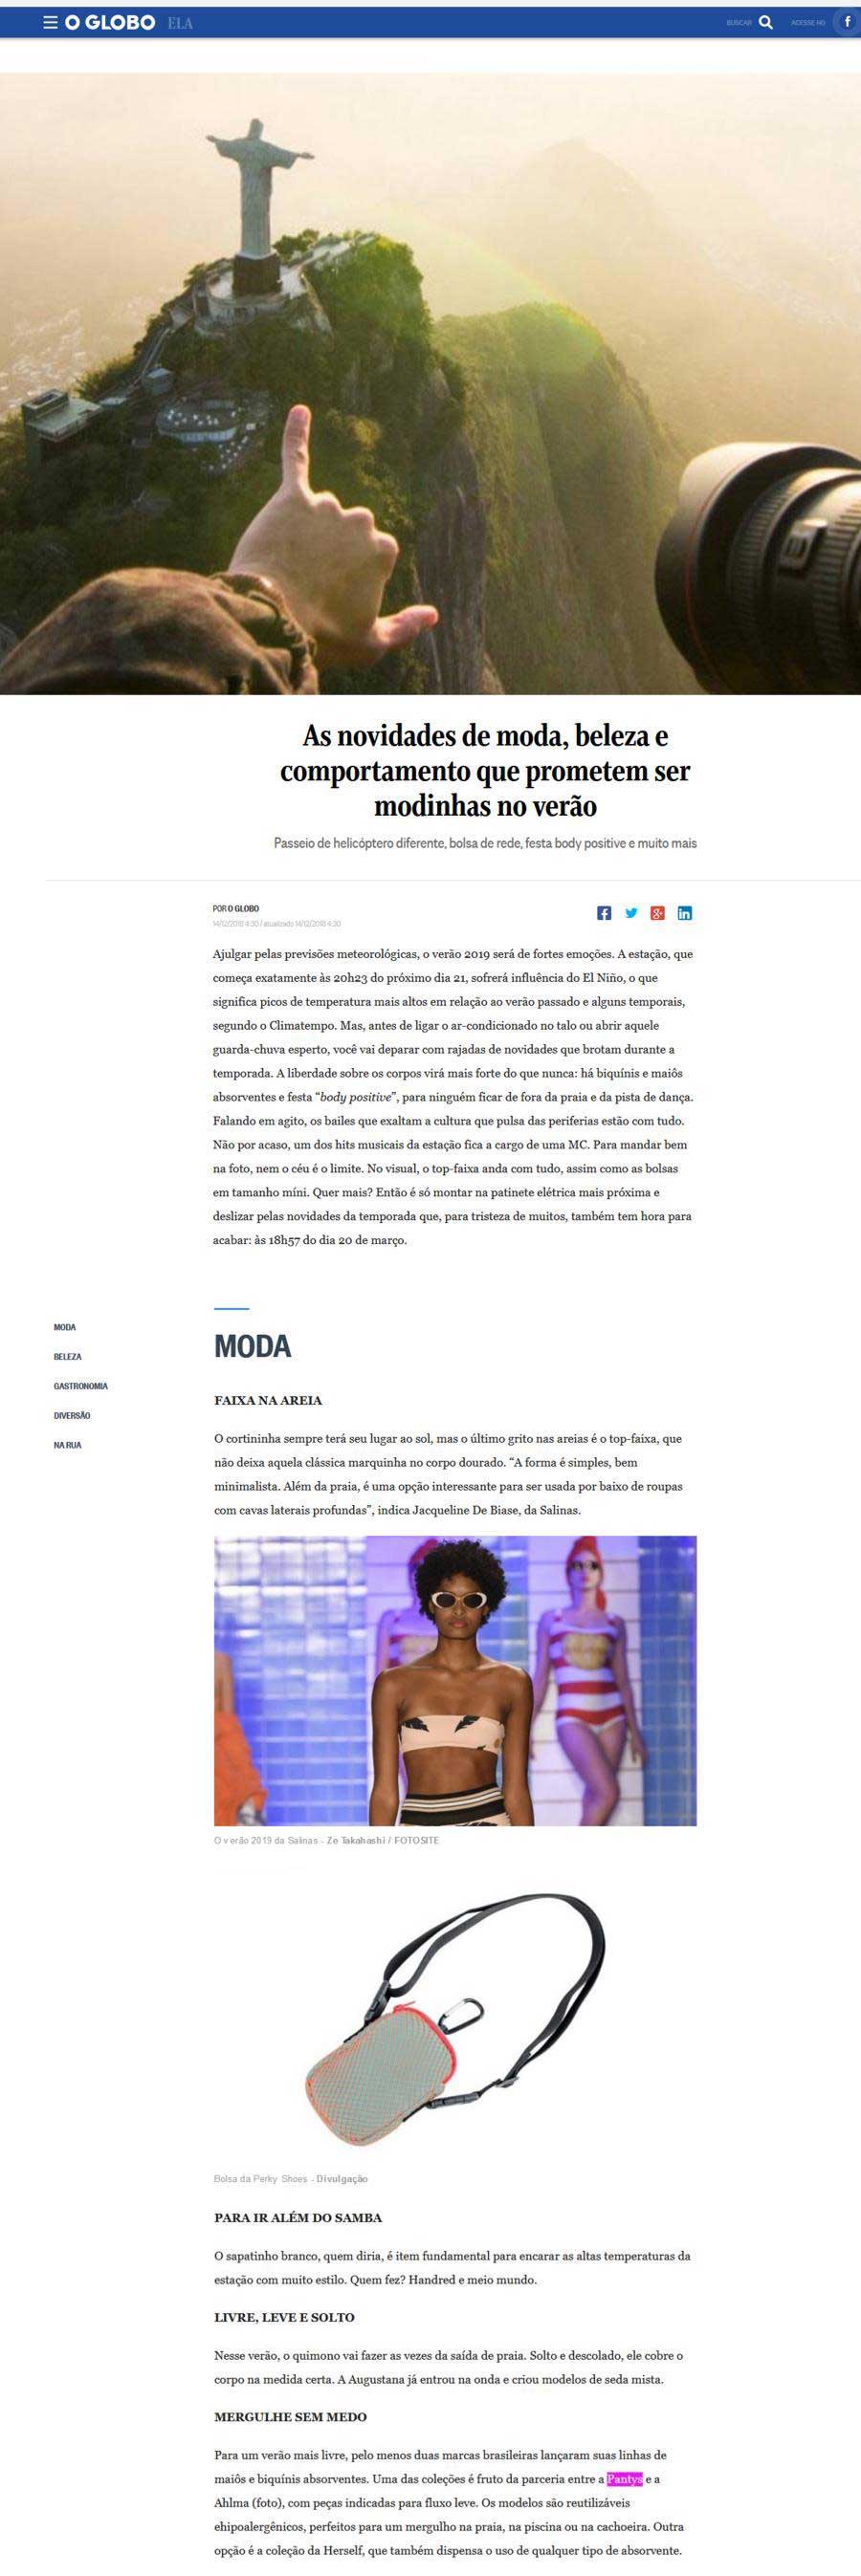 Página do site O Globo com notícia sobre: As novidades da moda, beleza e comportamento que prometem ser modinha no verão